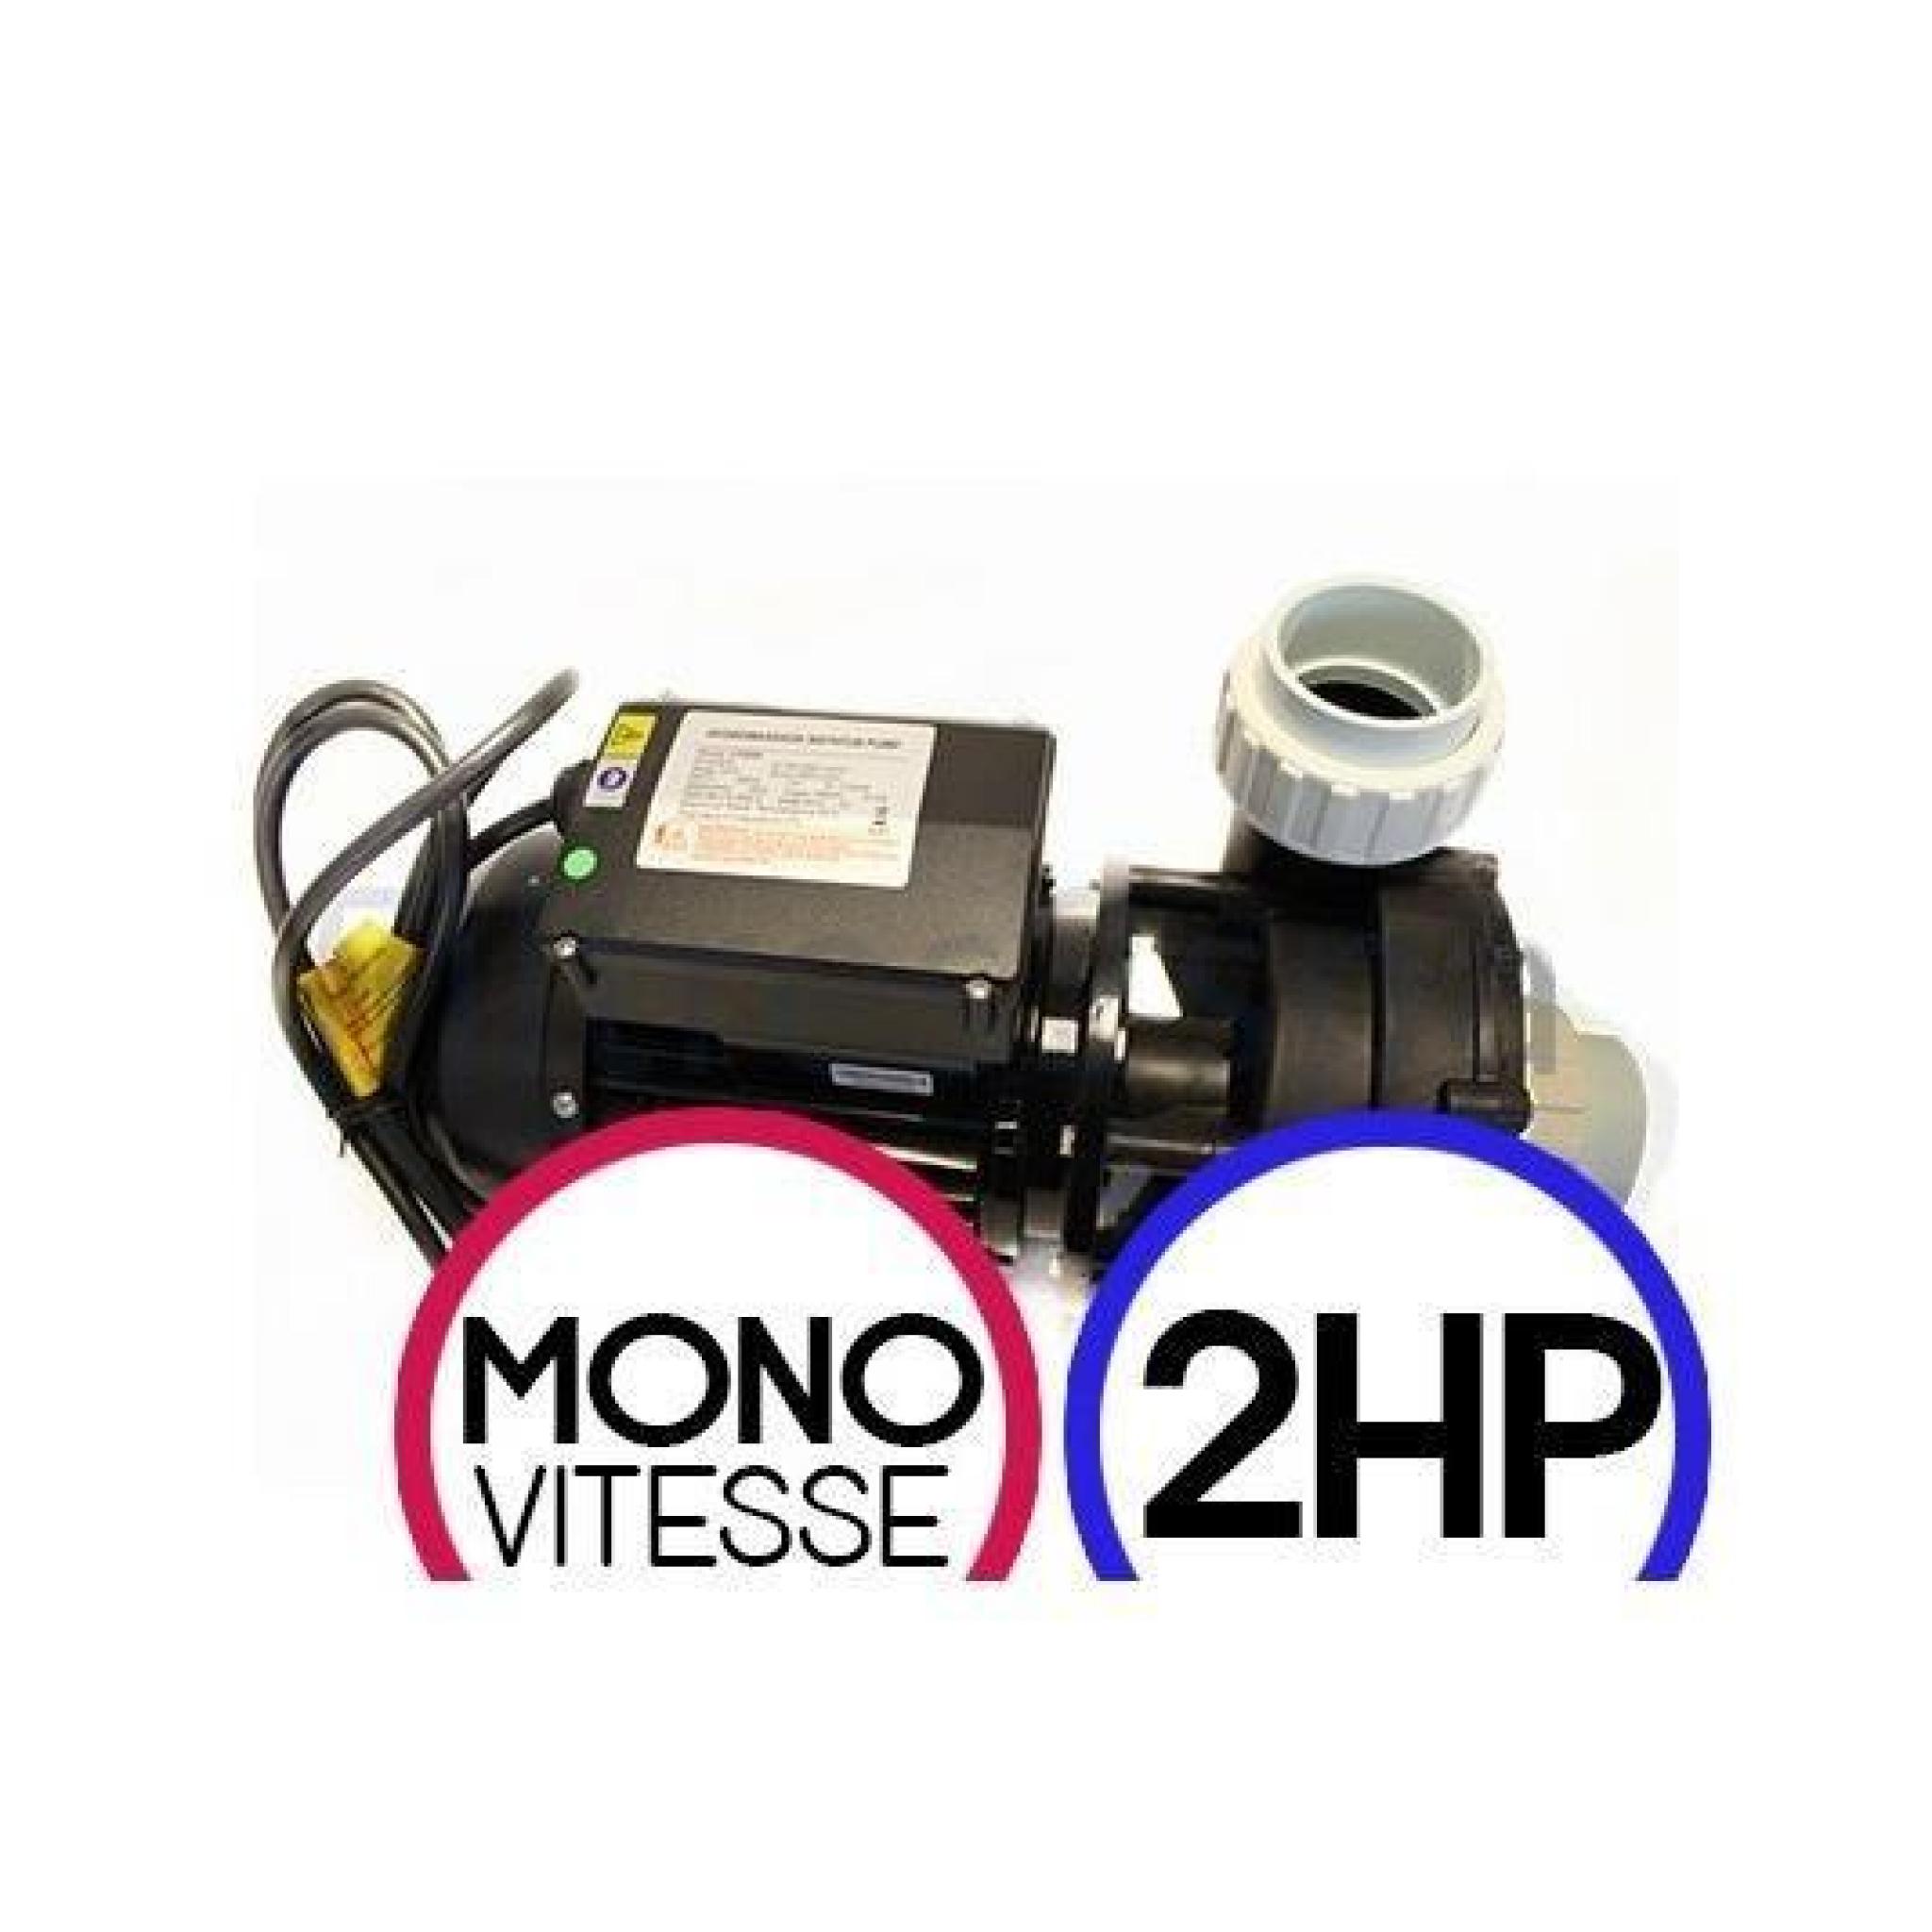 LX WHIRLPOOL LP200 2HP Mono vitesse -Pompe de massage spa - Câble et prise - Sans câble